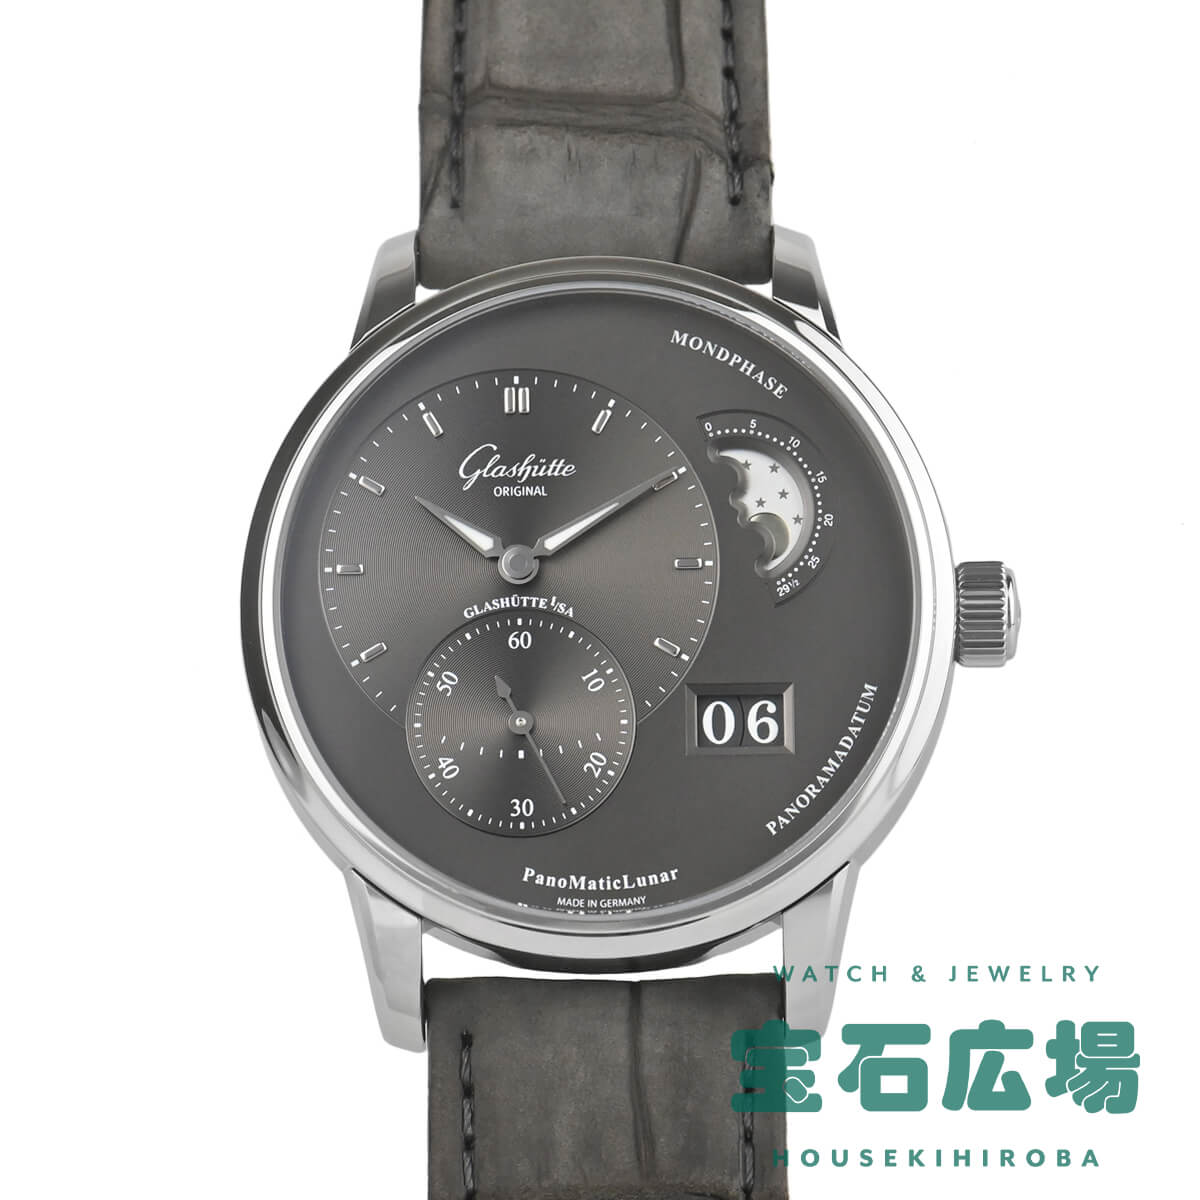 グラスヒュッテ オリジナル GLASHUTTE ORIGINAL パノマティックルナ 1-90-02-43-32-62 新品 メンズ 腕時計